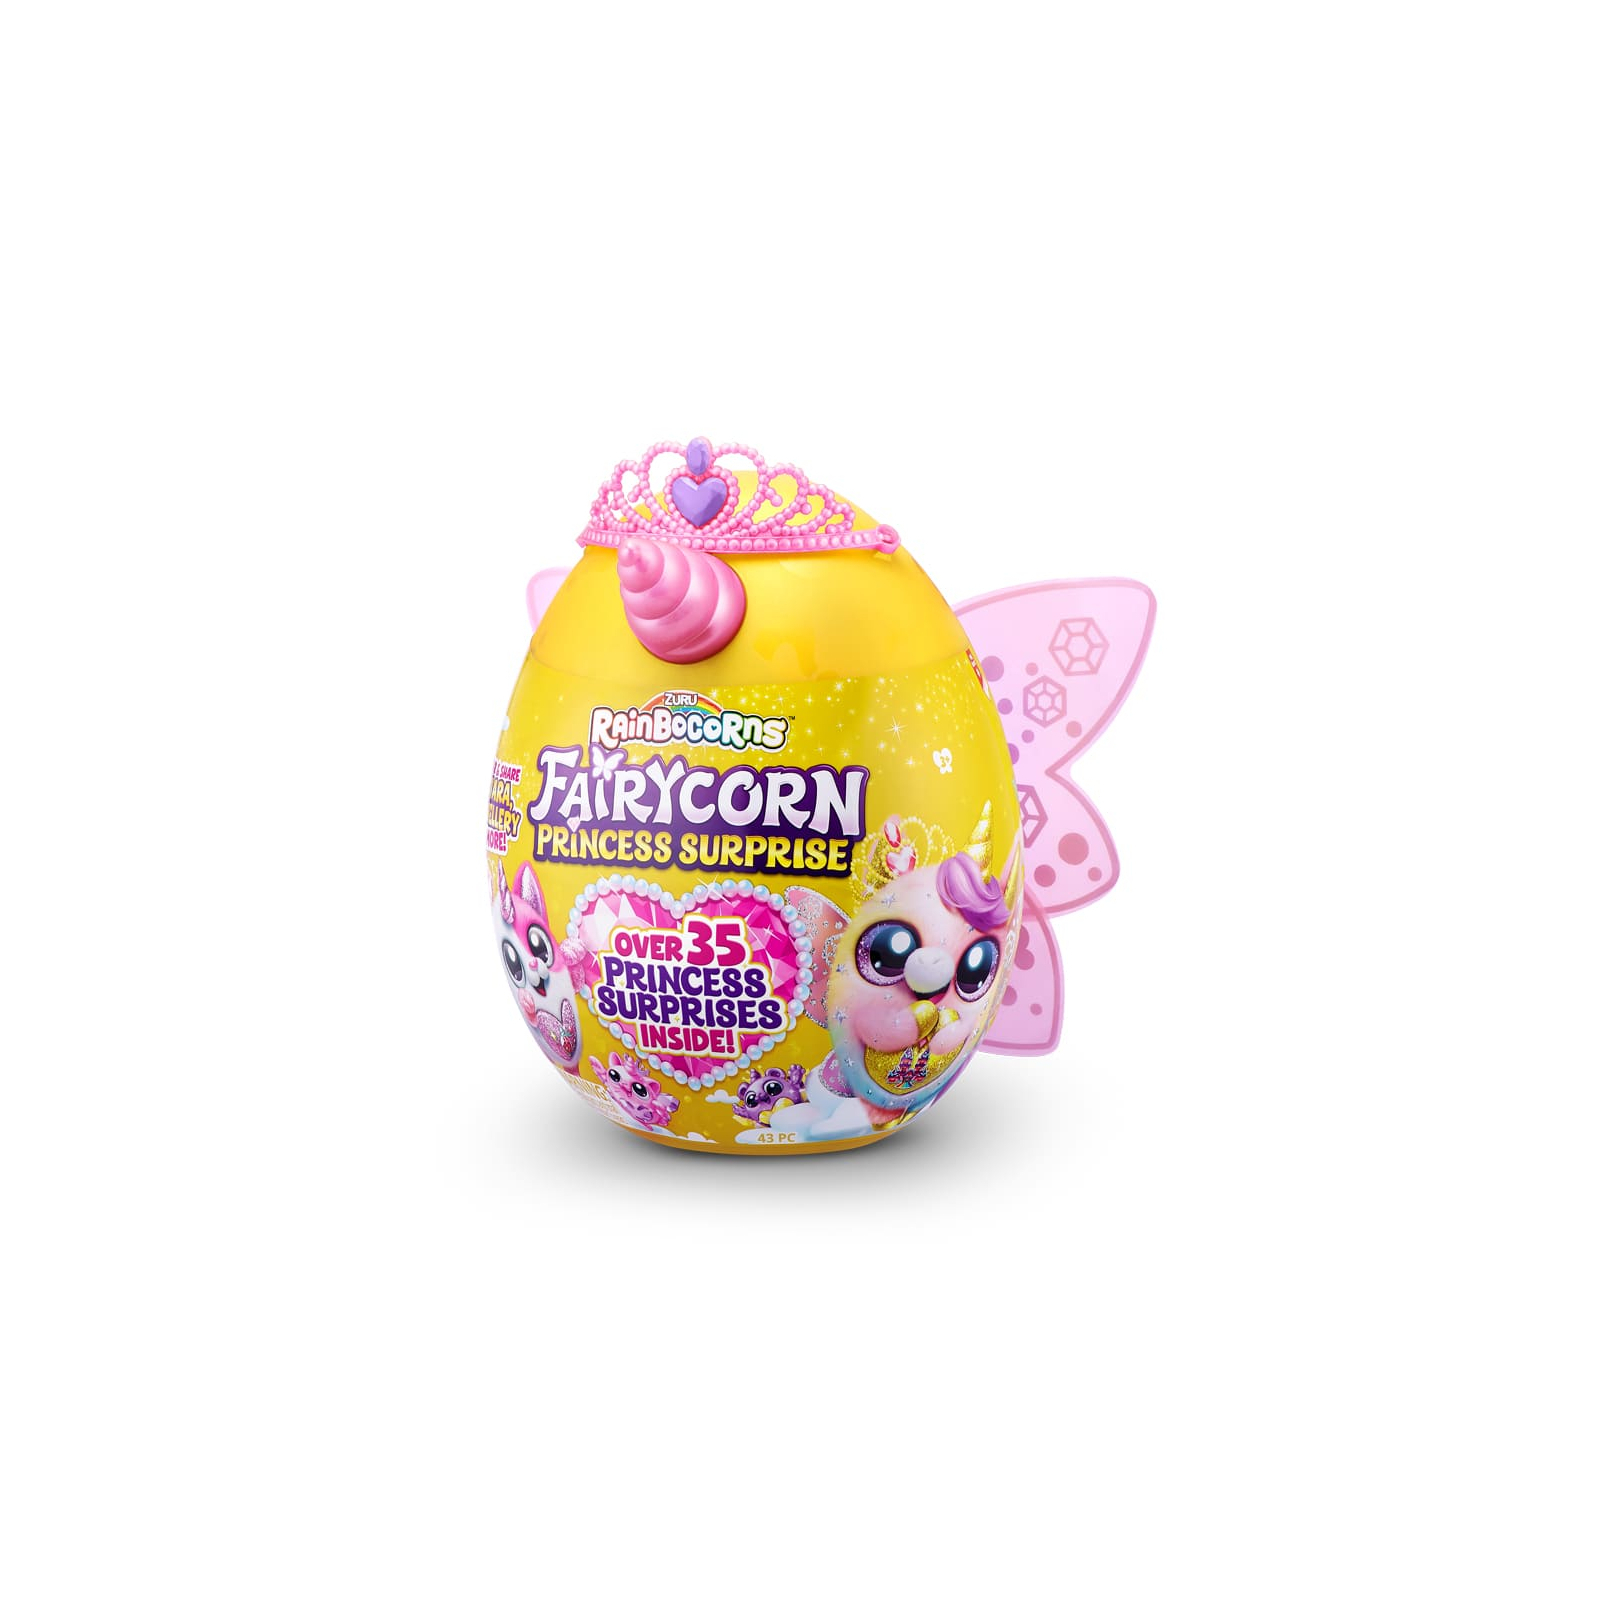 Мягкая игрушка Rainbocorns сюрприз D серия Fairycorn Princess (9281D)